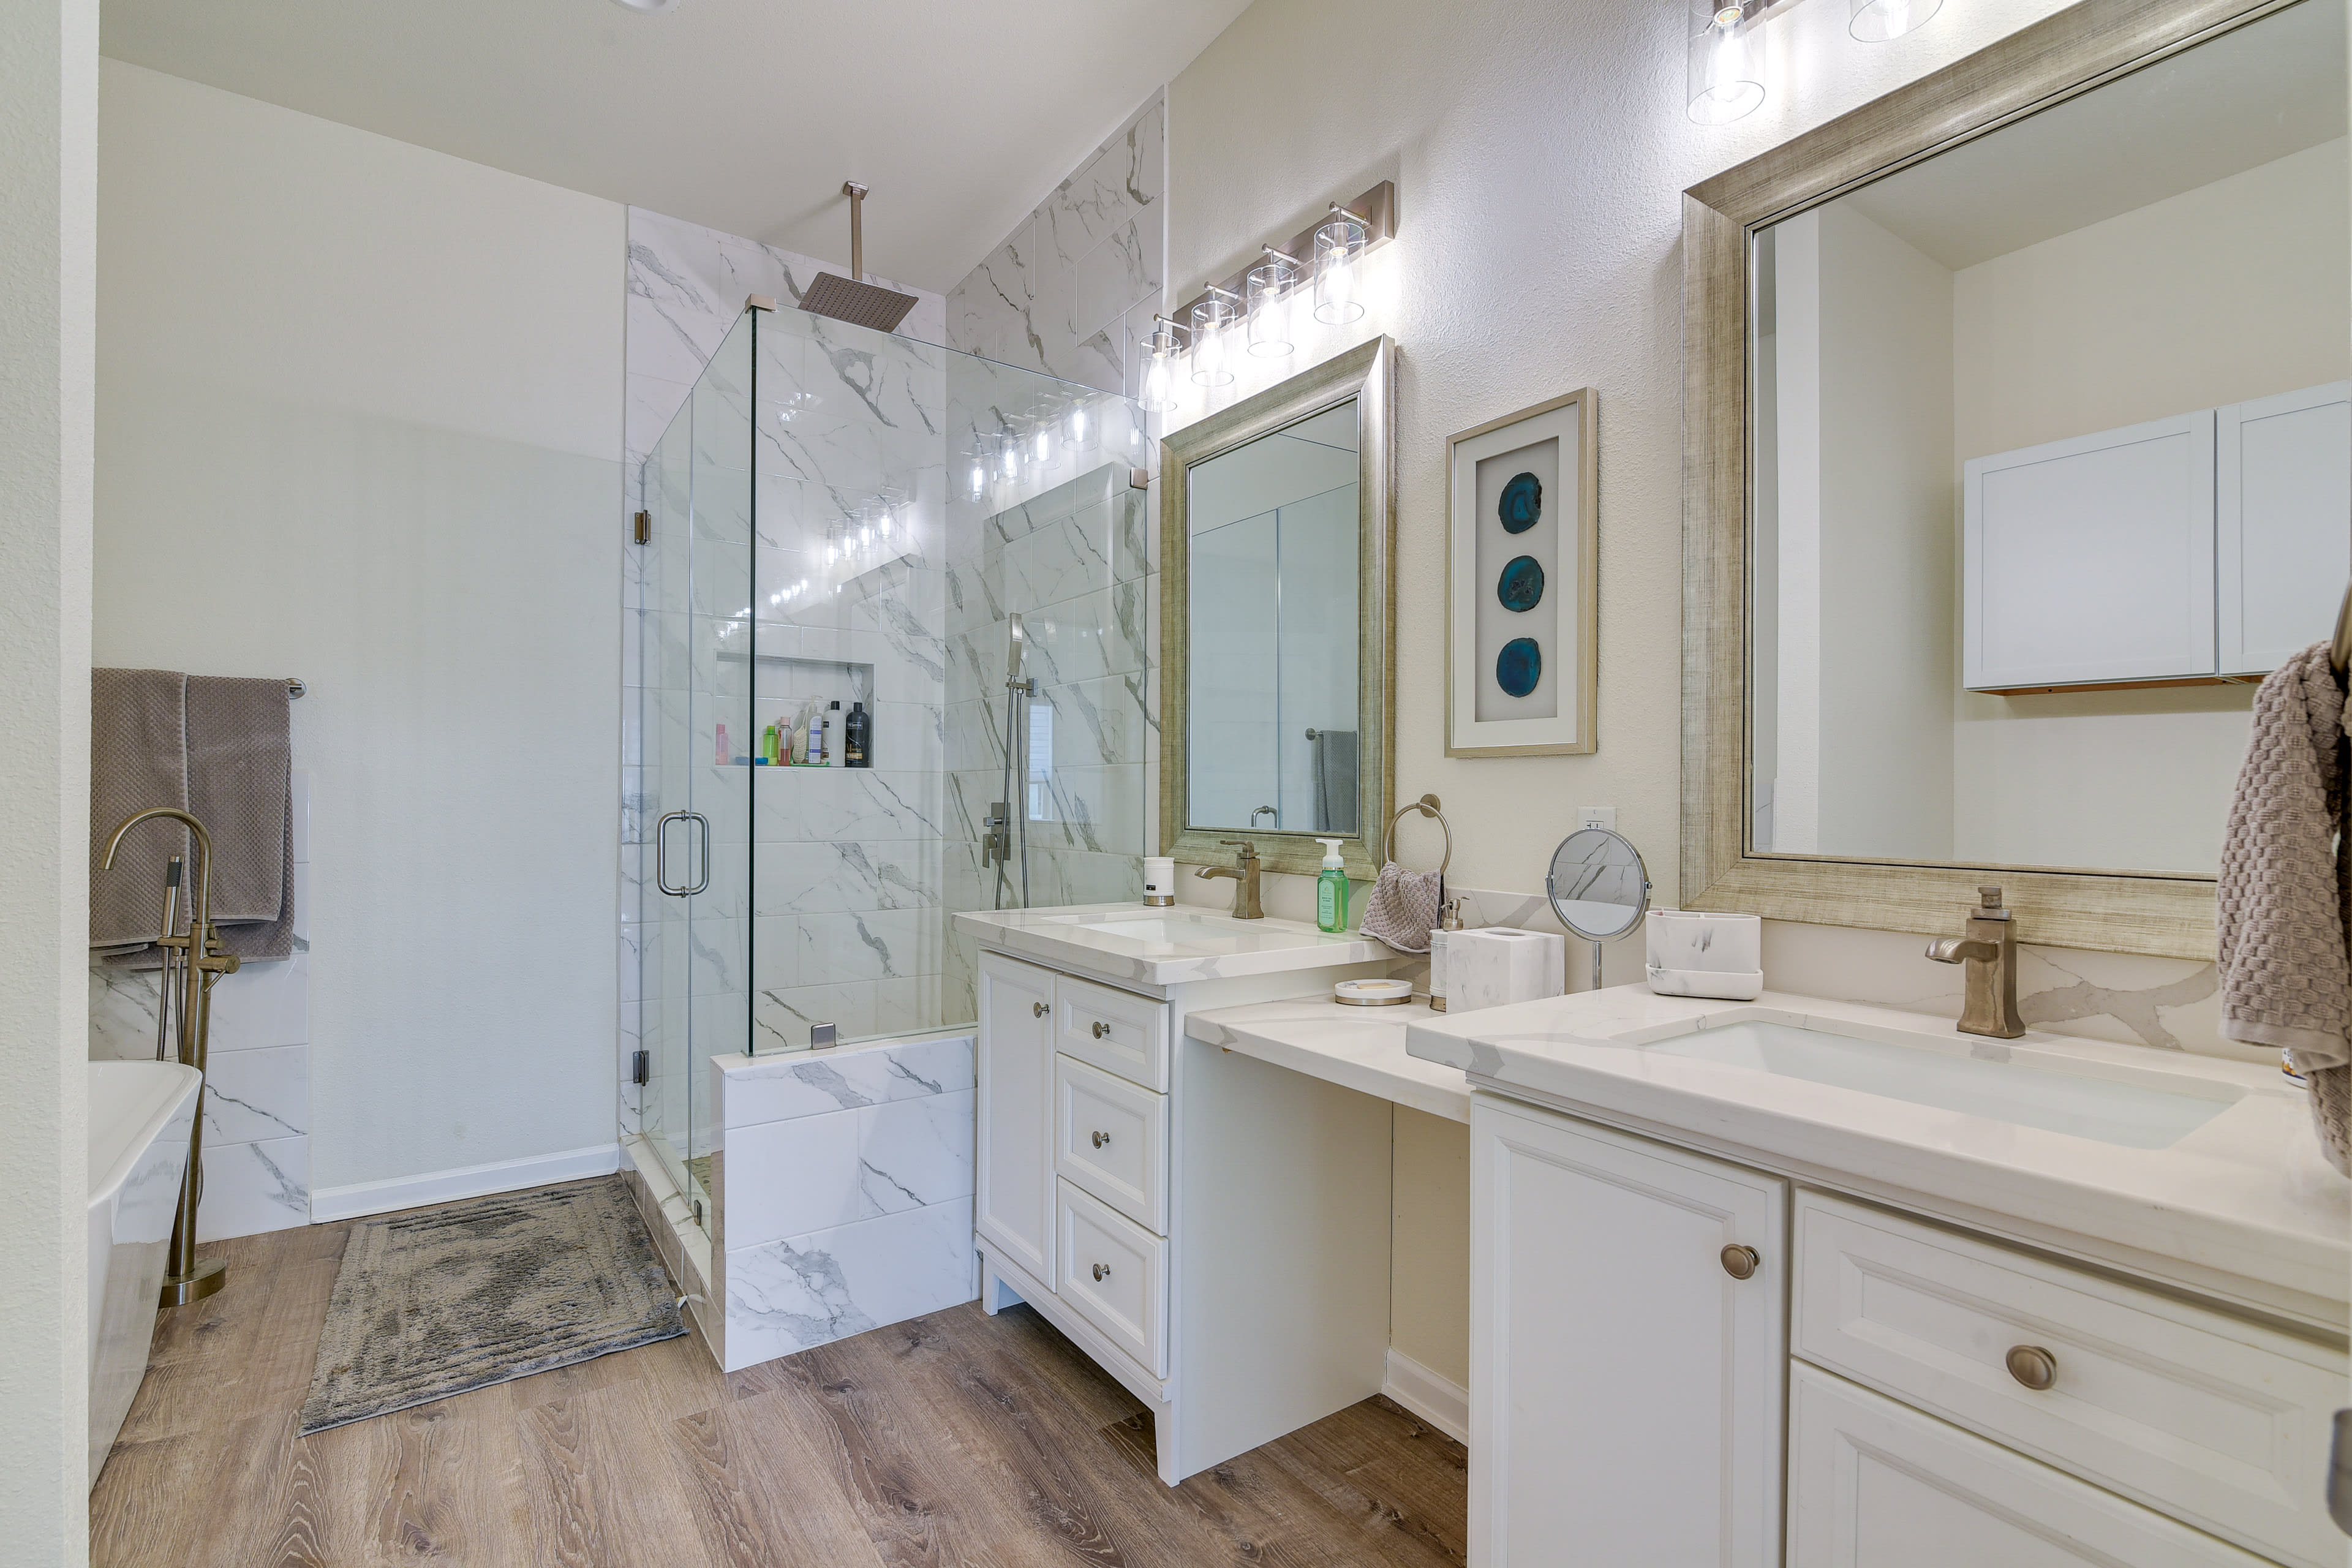 En-Suite Bathroom | Complimentary Toiletries | Hair Dryer | Towels Provided